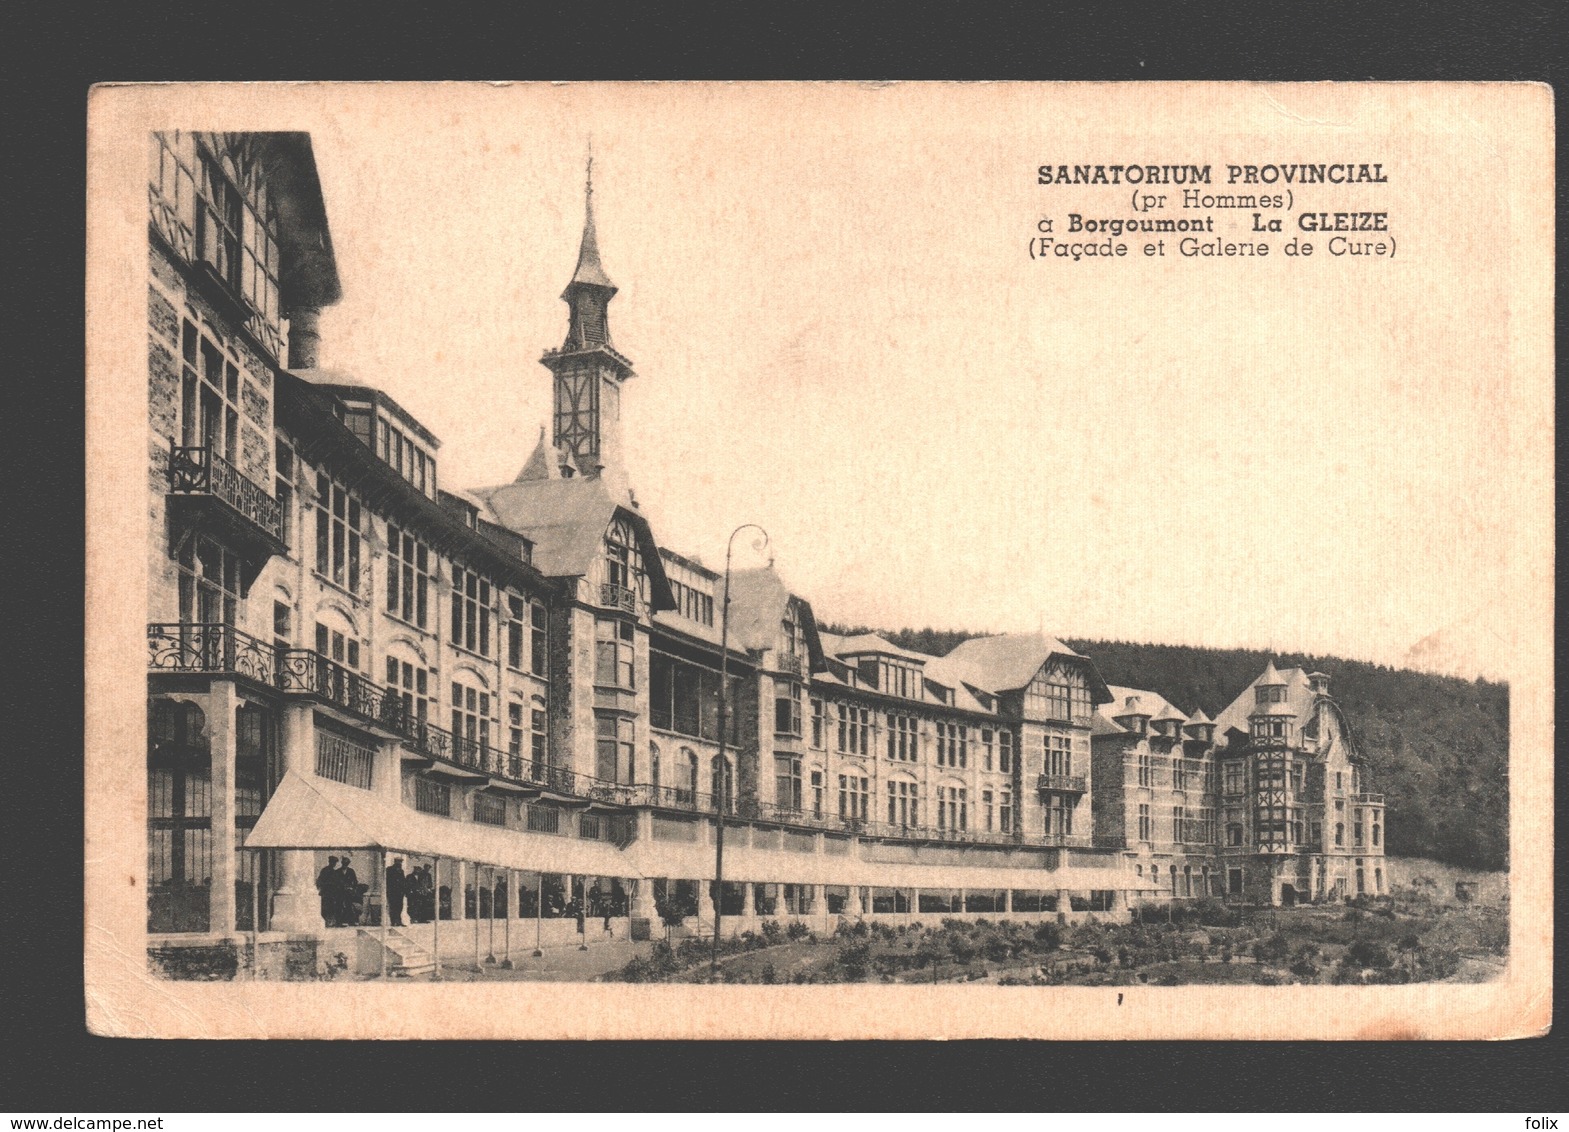 Borgoumont - La Gleize - Sanatorium Provincial - Façade Et Galerie De Cure - Stoumont